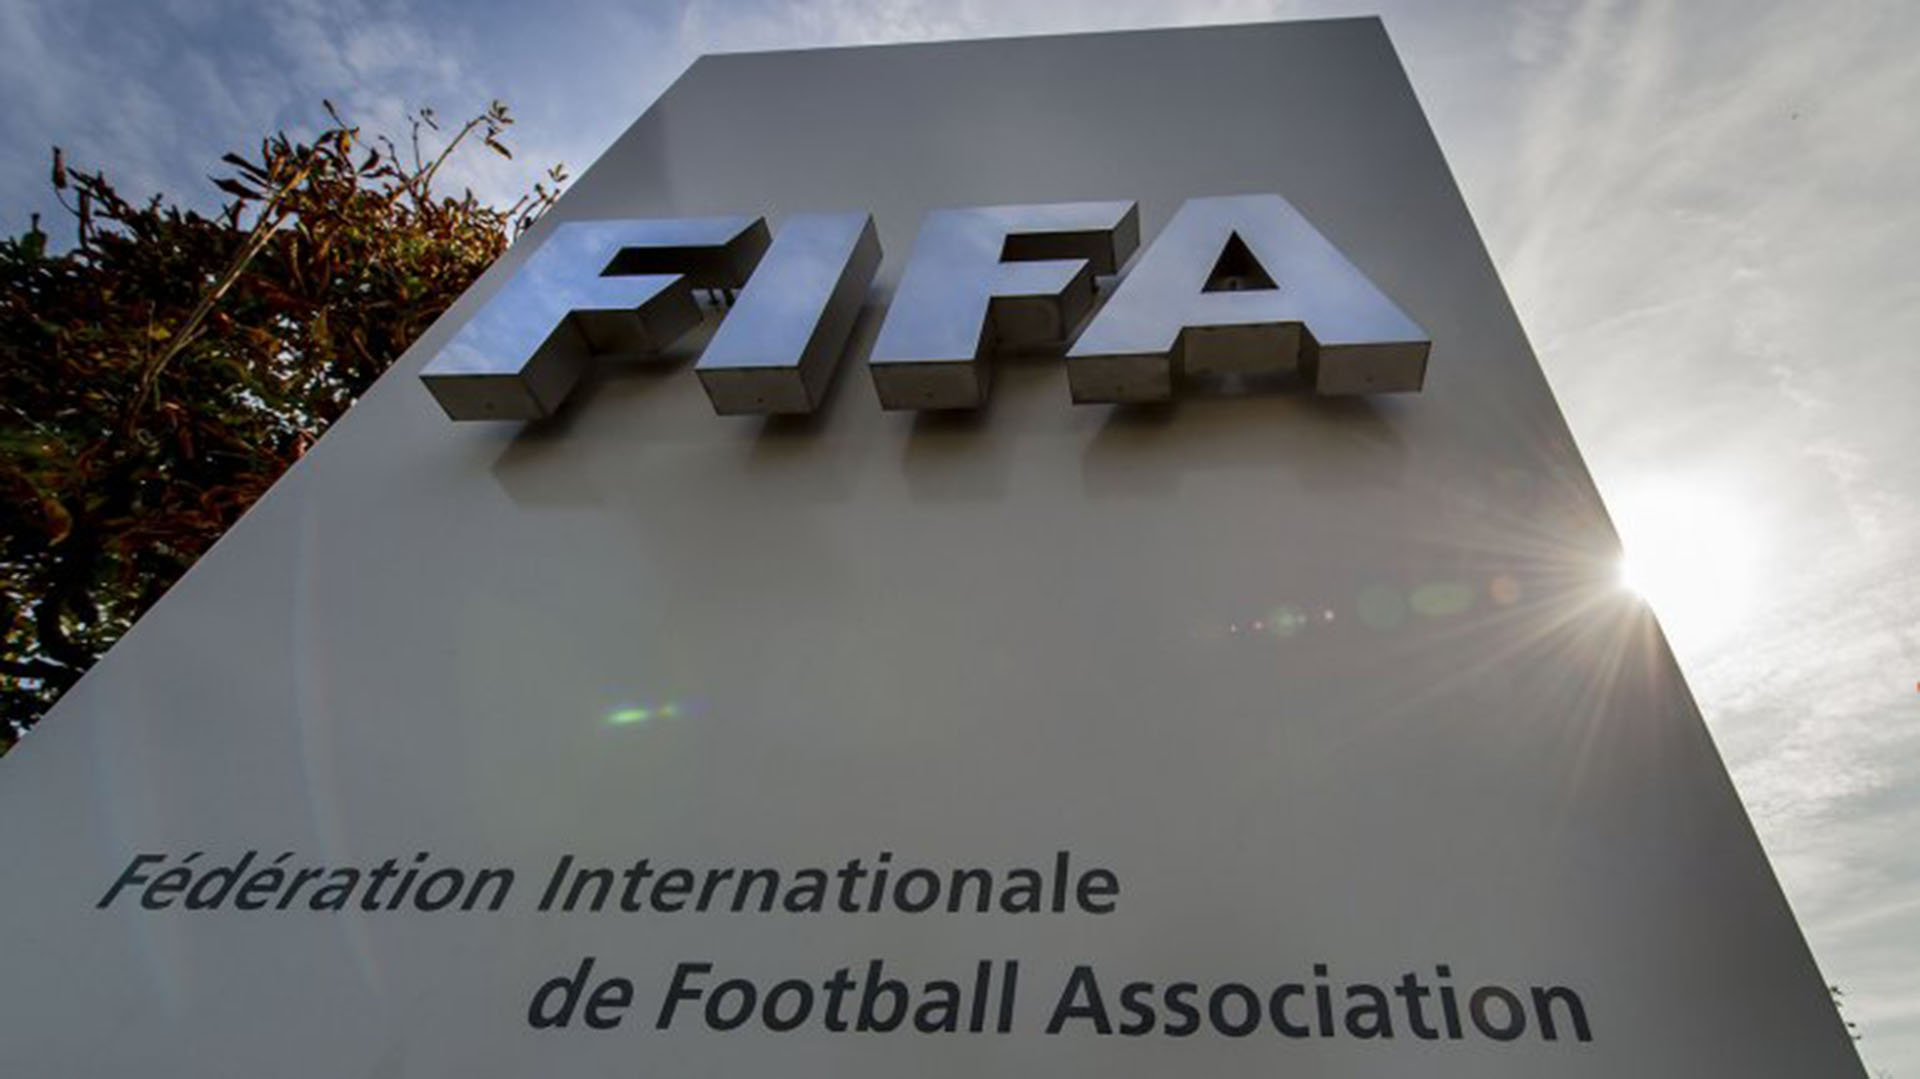 FIFA Gate: detalles del mayor escándalo de corrupción en la historia del fútbol que involucró a Rusia y Qatar